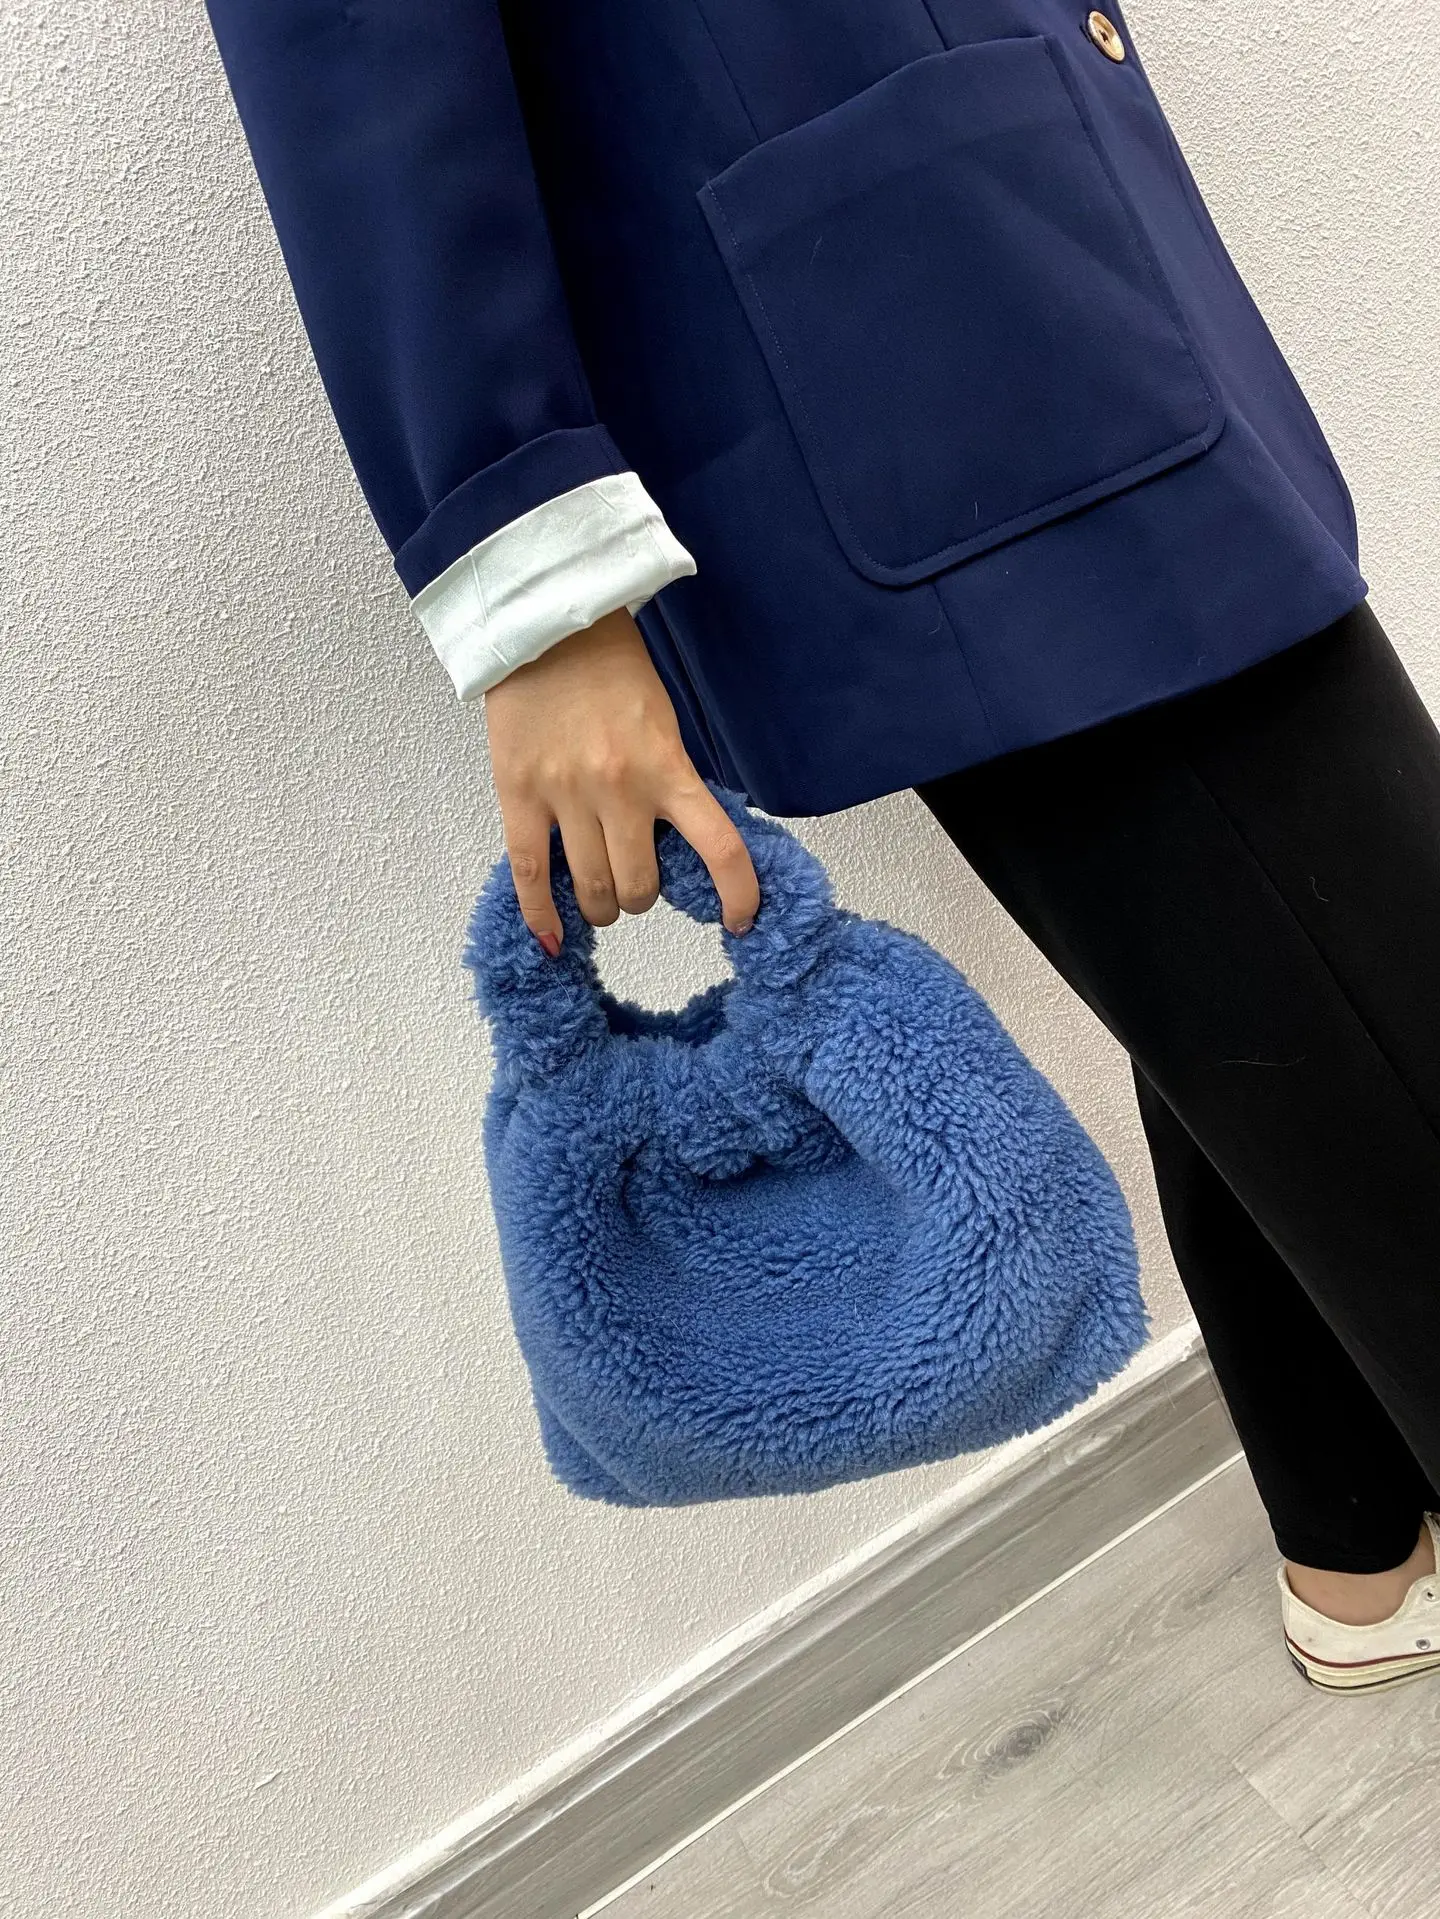 Женская модная новая сумка из больших частиц Panax notoшень шерстяная бархатная меховая сумка складная стильная сумка-мессенджер оптовая прода... от AliExpress RU&CIS NEW